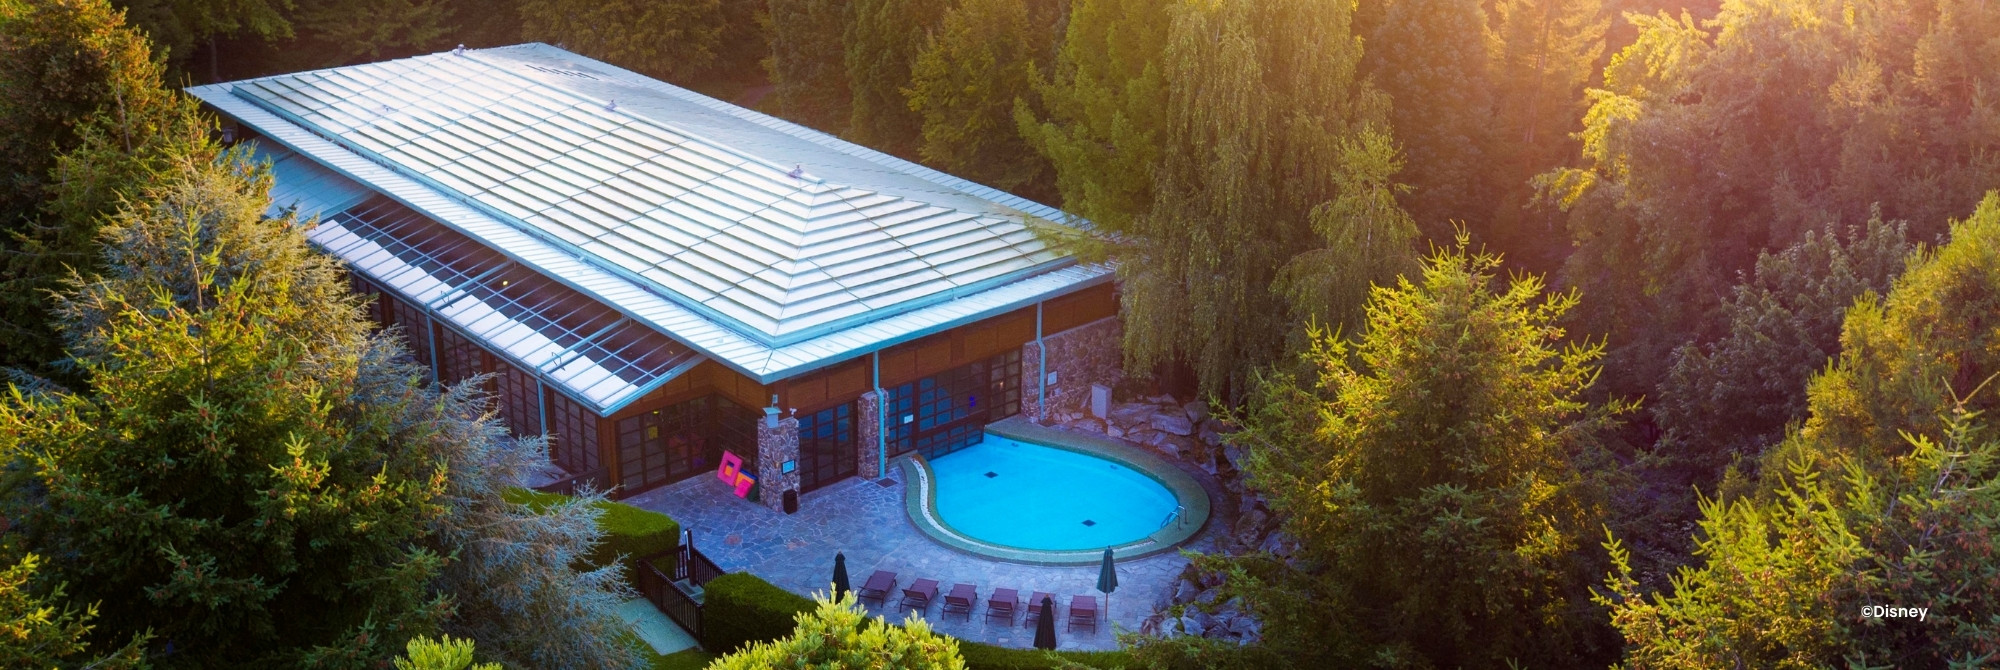 Lodge van Disney Hotel Sequoia Lodge met buitenzwembad en bomen eromheen